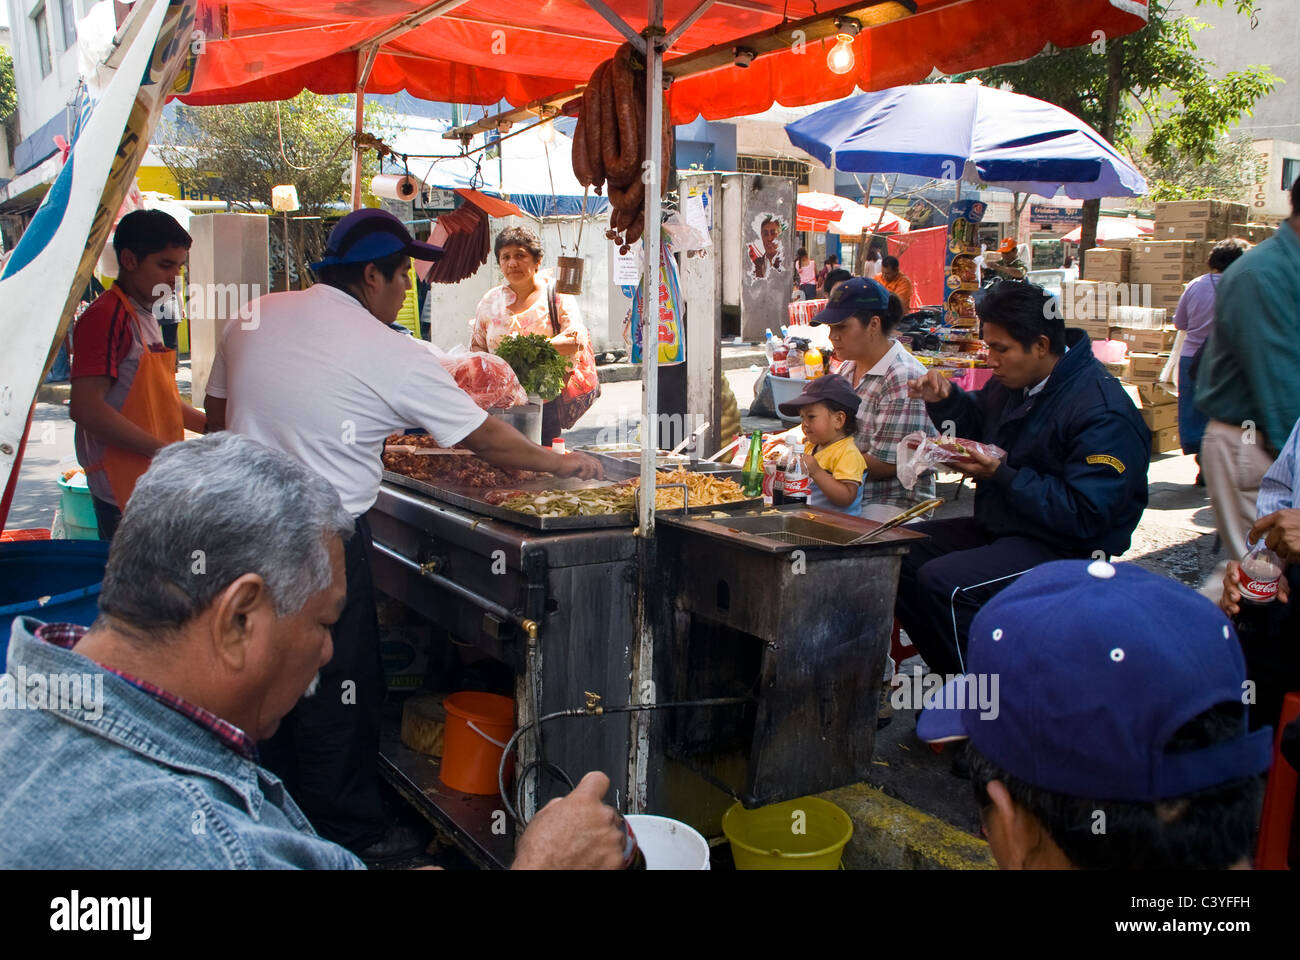 Mexico city. Street food. Stock Photo